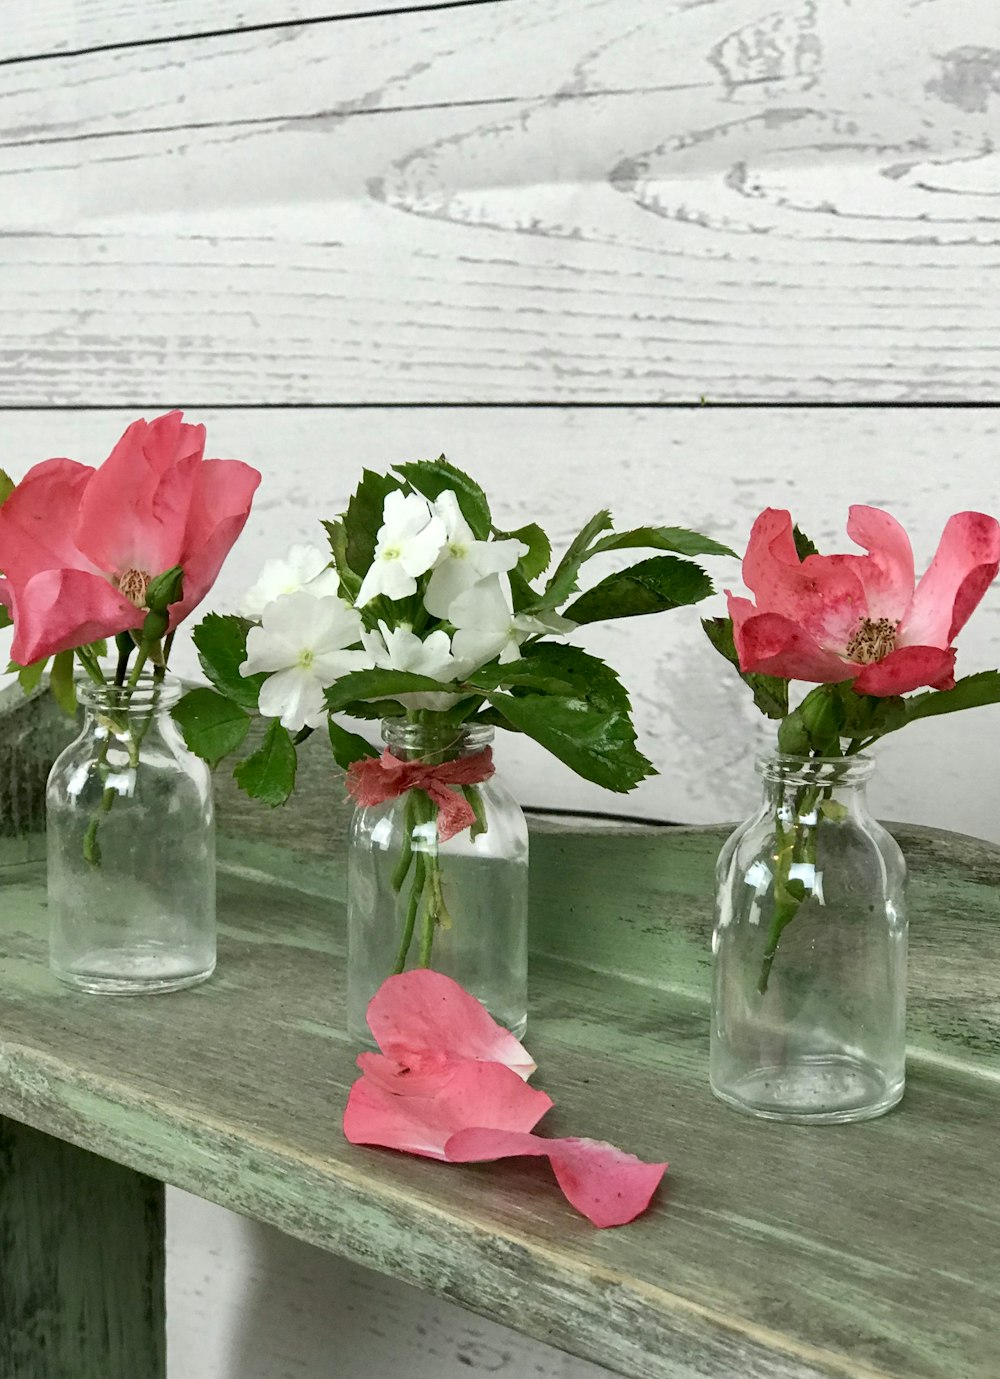 blooming pink rose flowers in vase